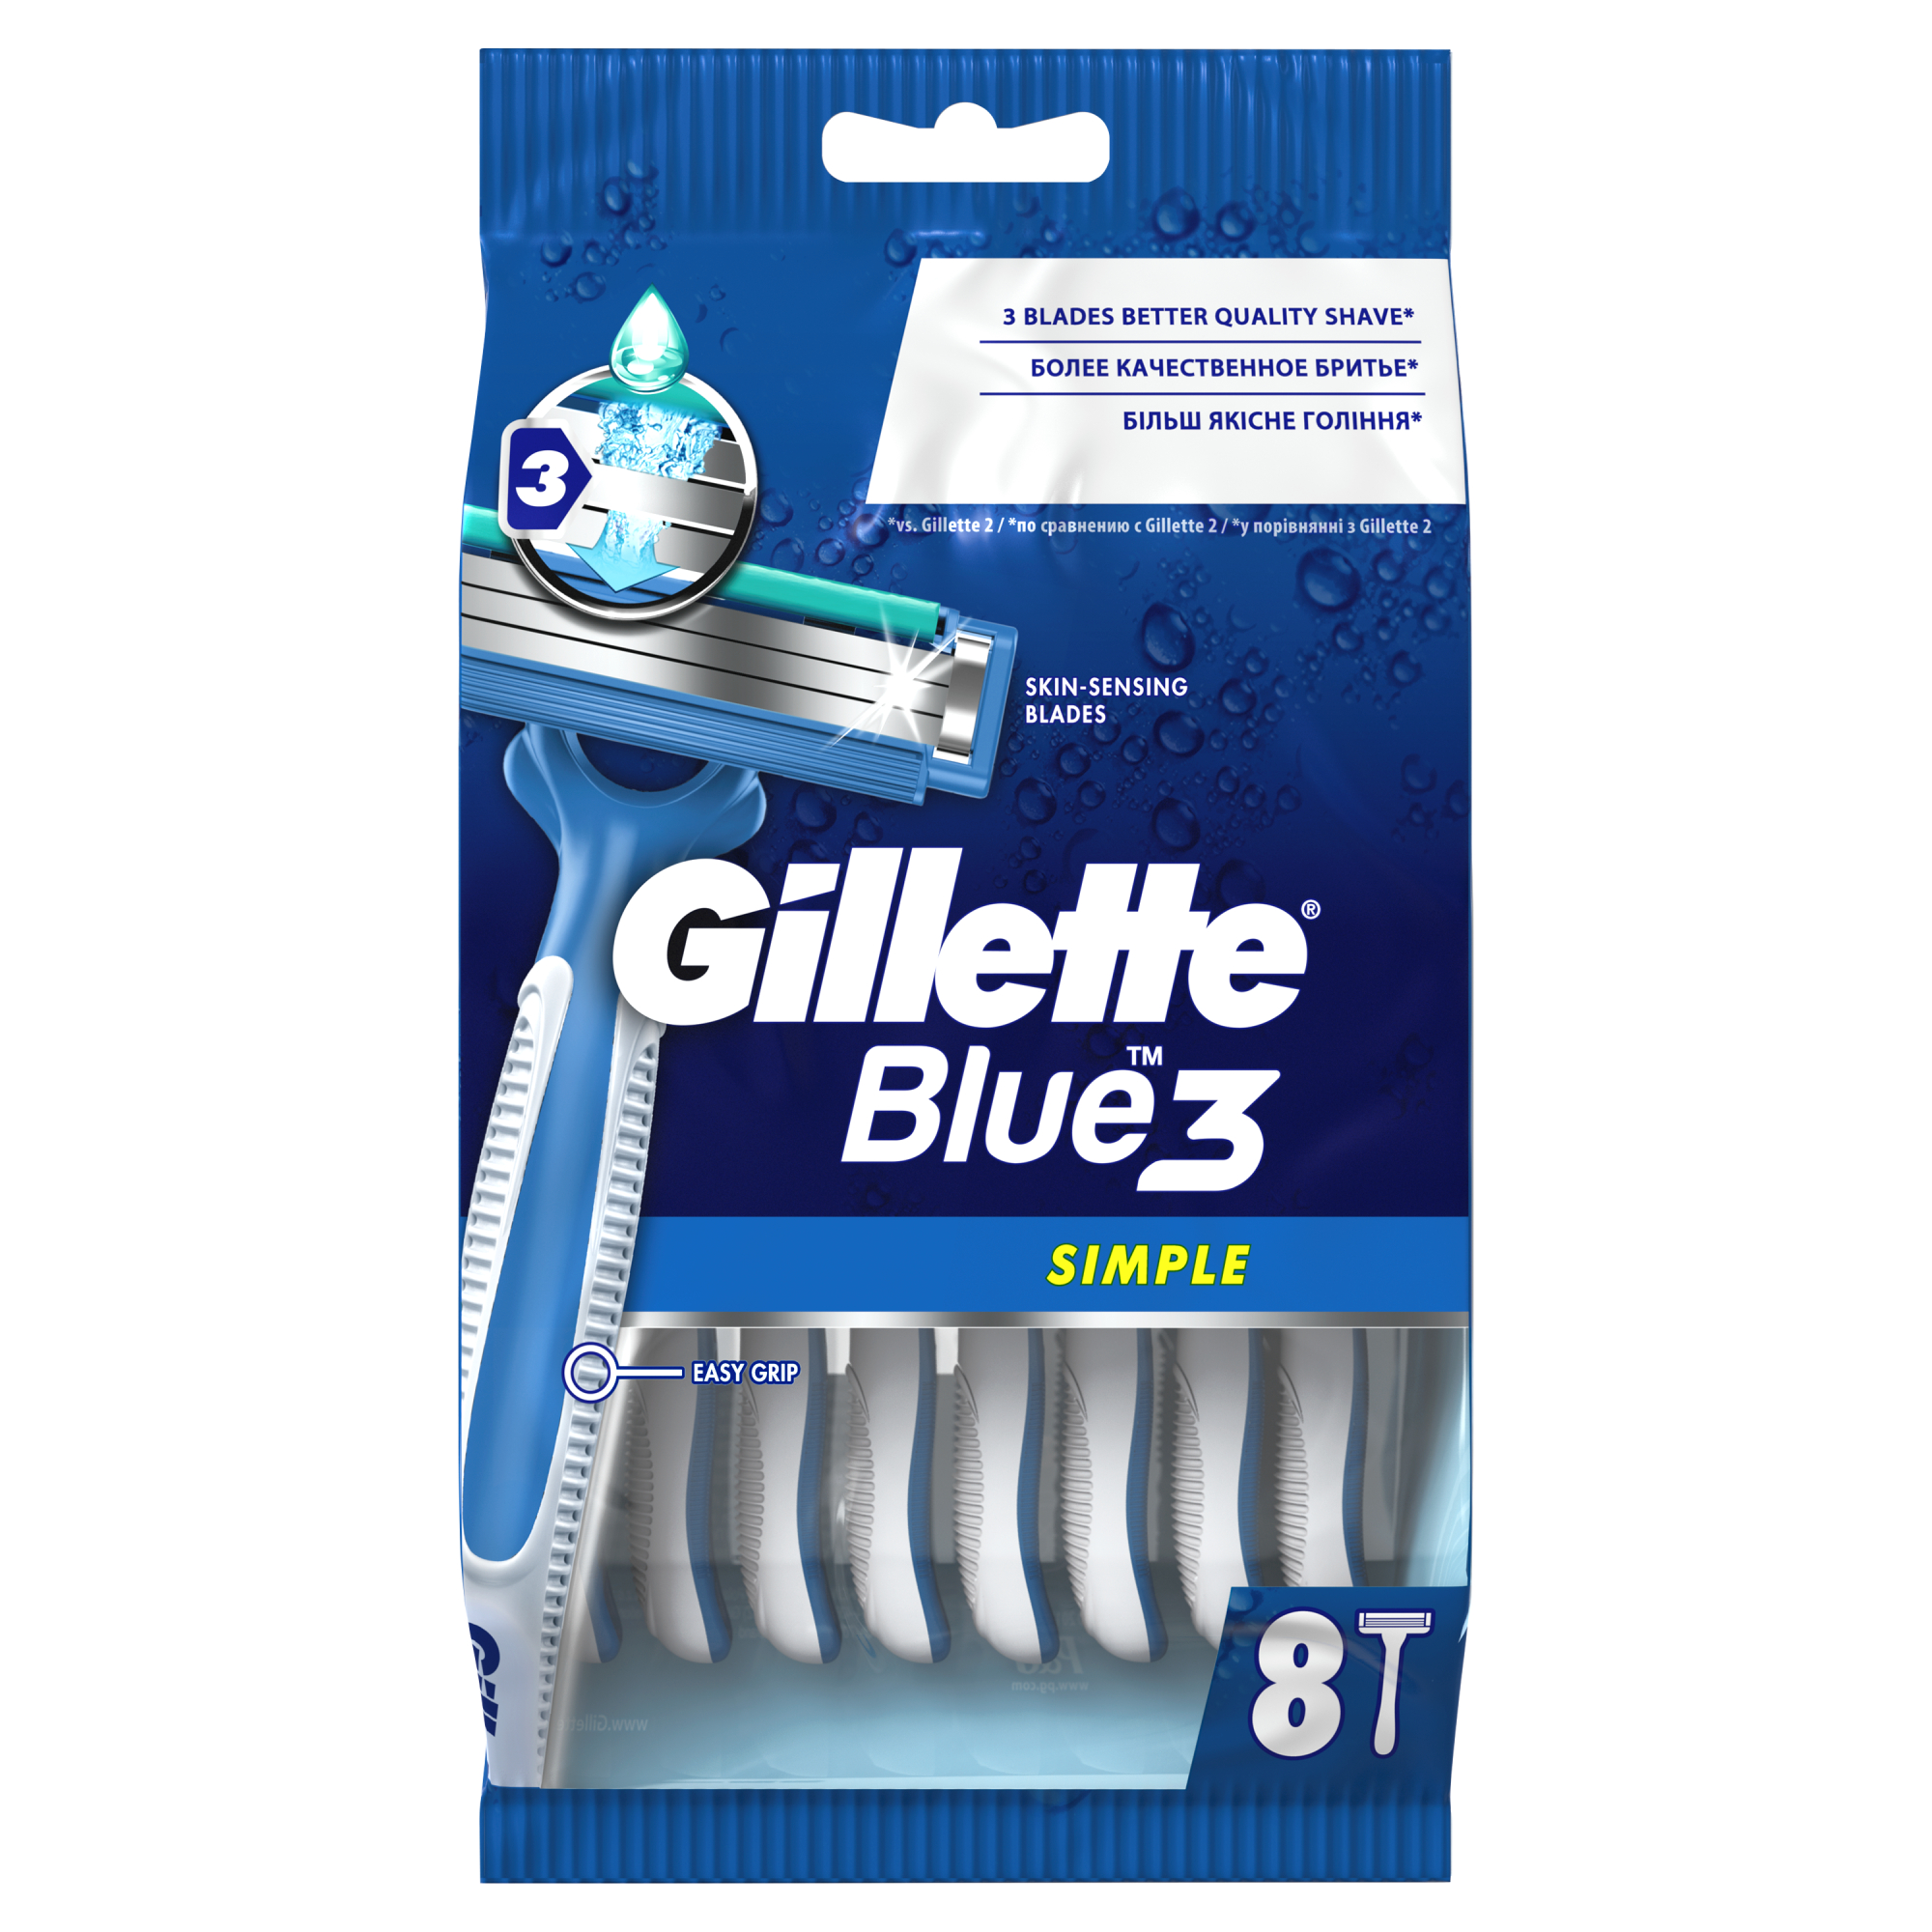 Одноразовые мужские бритвы Gillette Blue3 Simple, с 3 лезвиями, 8, фиксированная головка одноразовая женская бритва gillette blue 2 5 шт